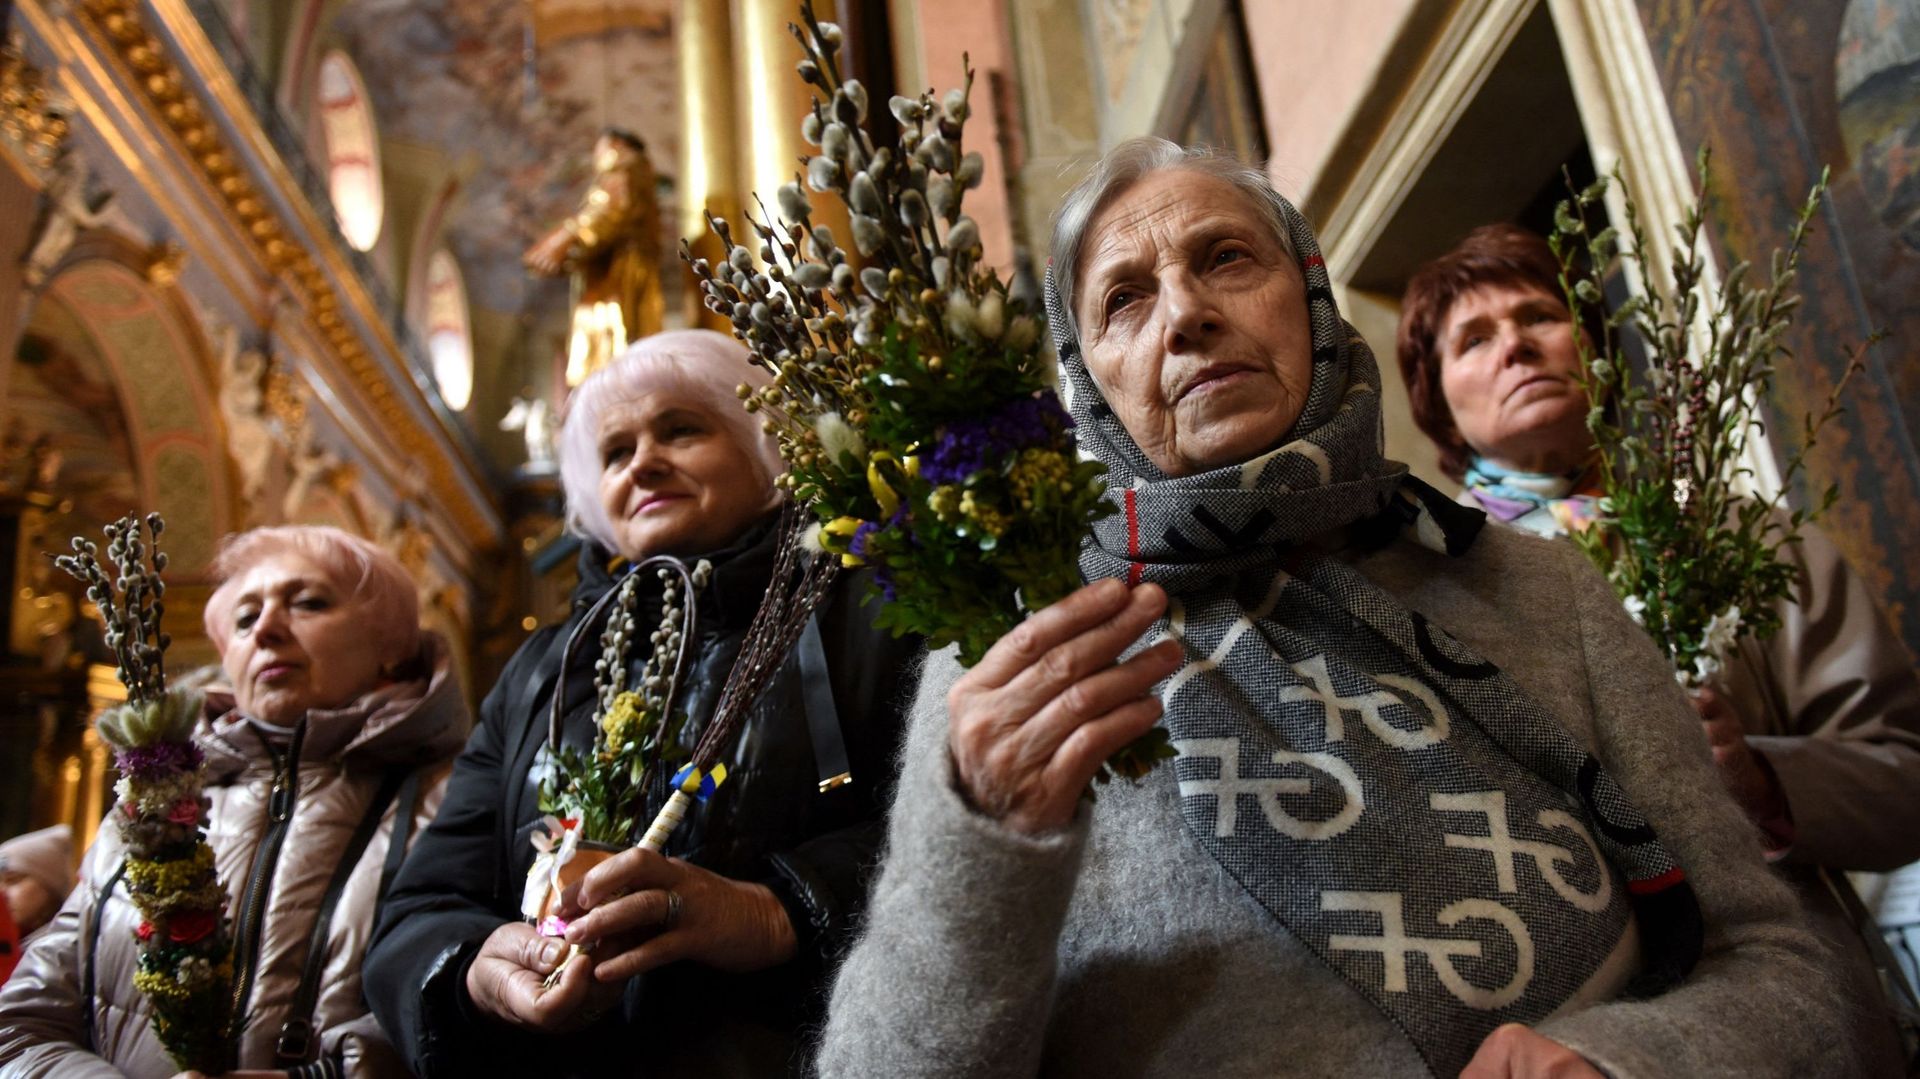 Des fidèles participent à un office orthodoxe du dimanche des Rameaux à l’église de garnison Saints Pierre et Paul dans la ville de Lviv, dans l’ouest de l’Ukraine, le 17 avril 2022, en pleine invasion russe de l’Ukraine. Yuriy Dyachyshyn / AFP